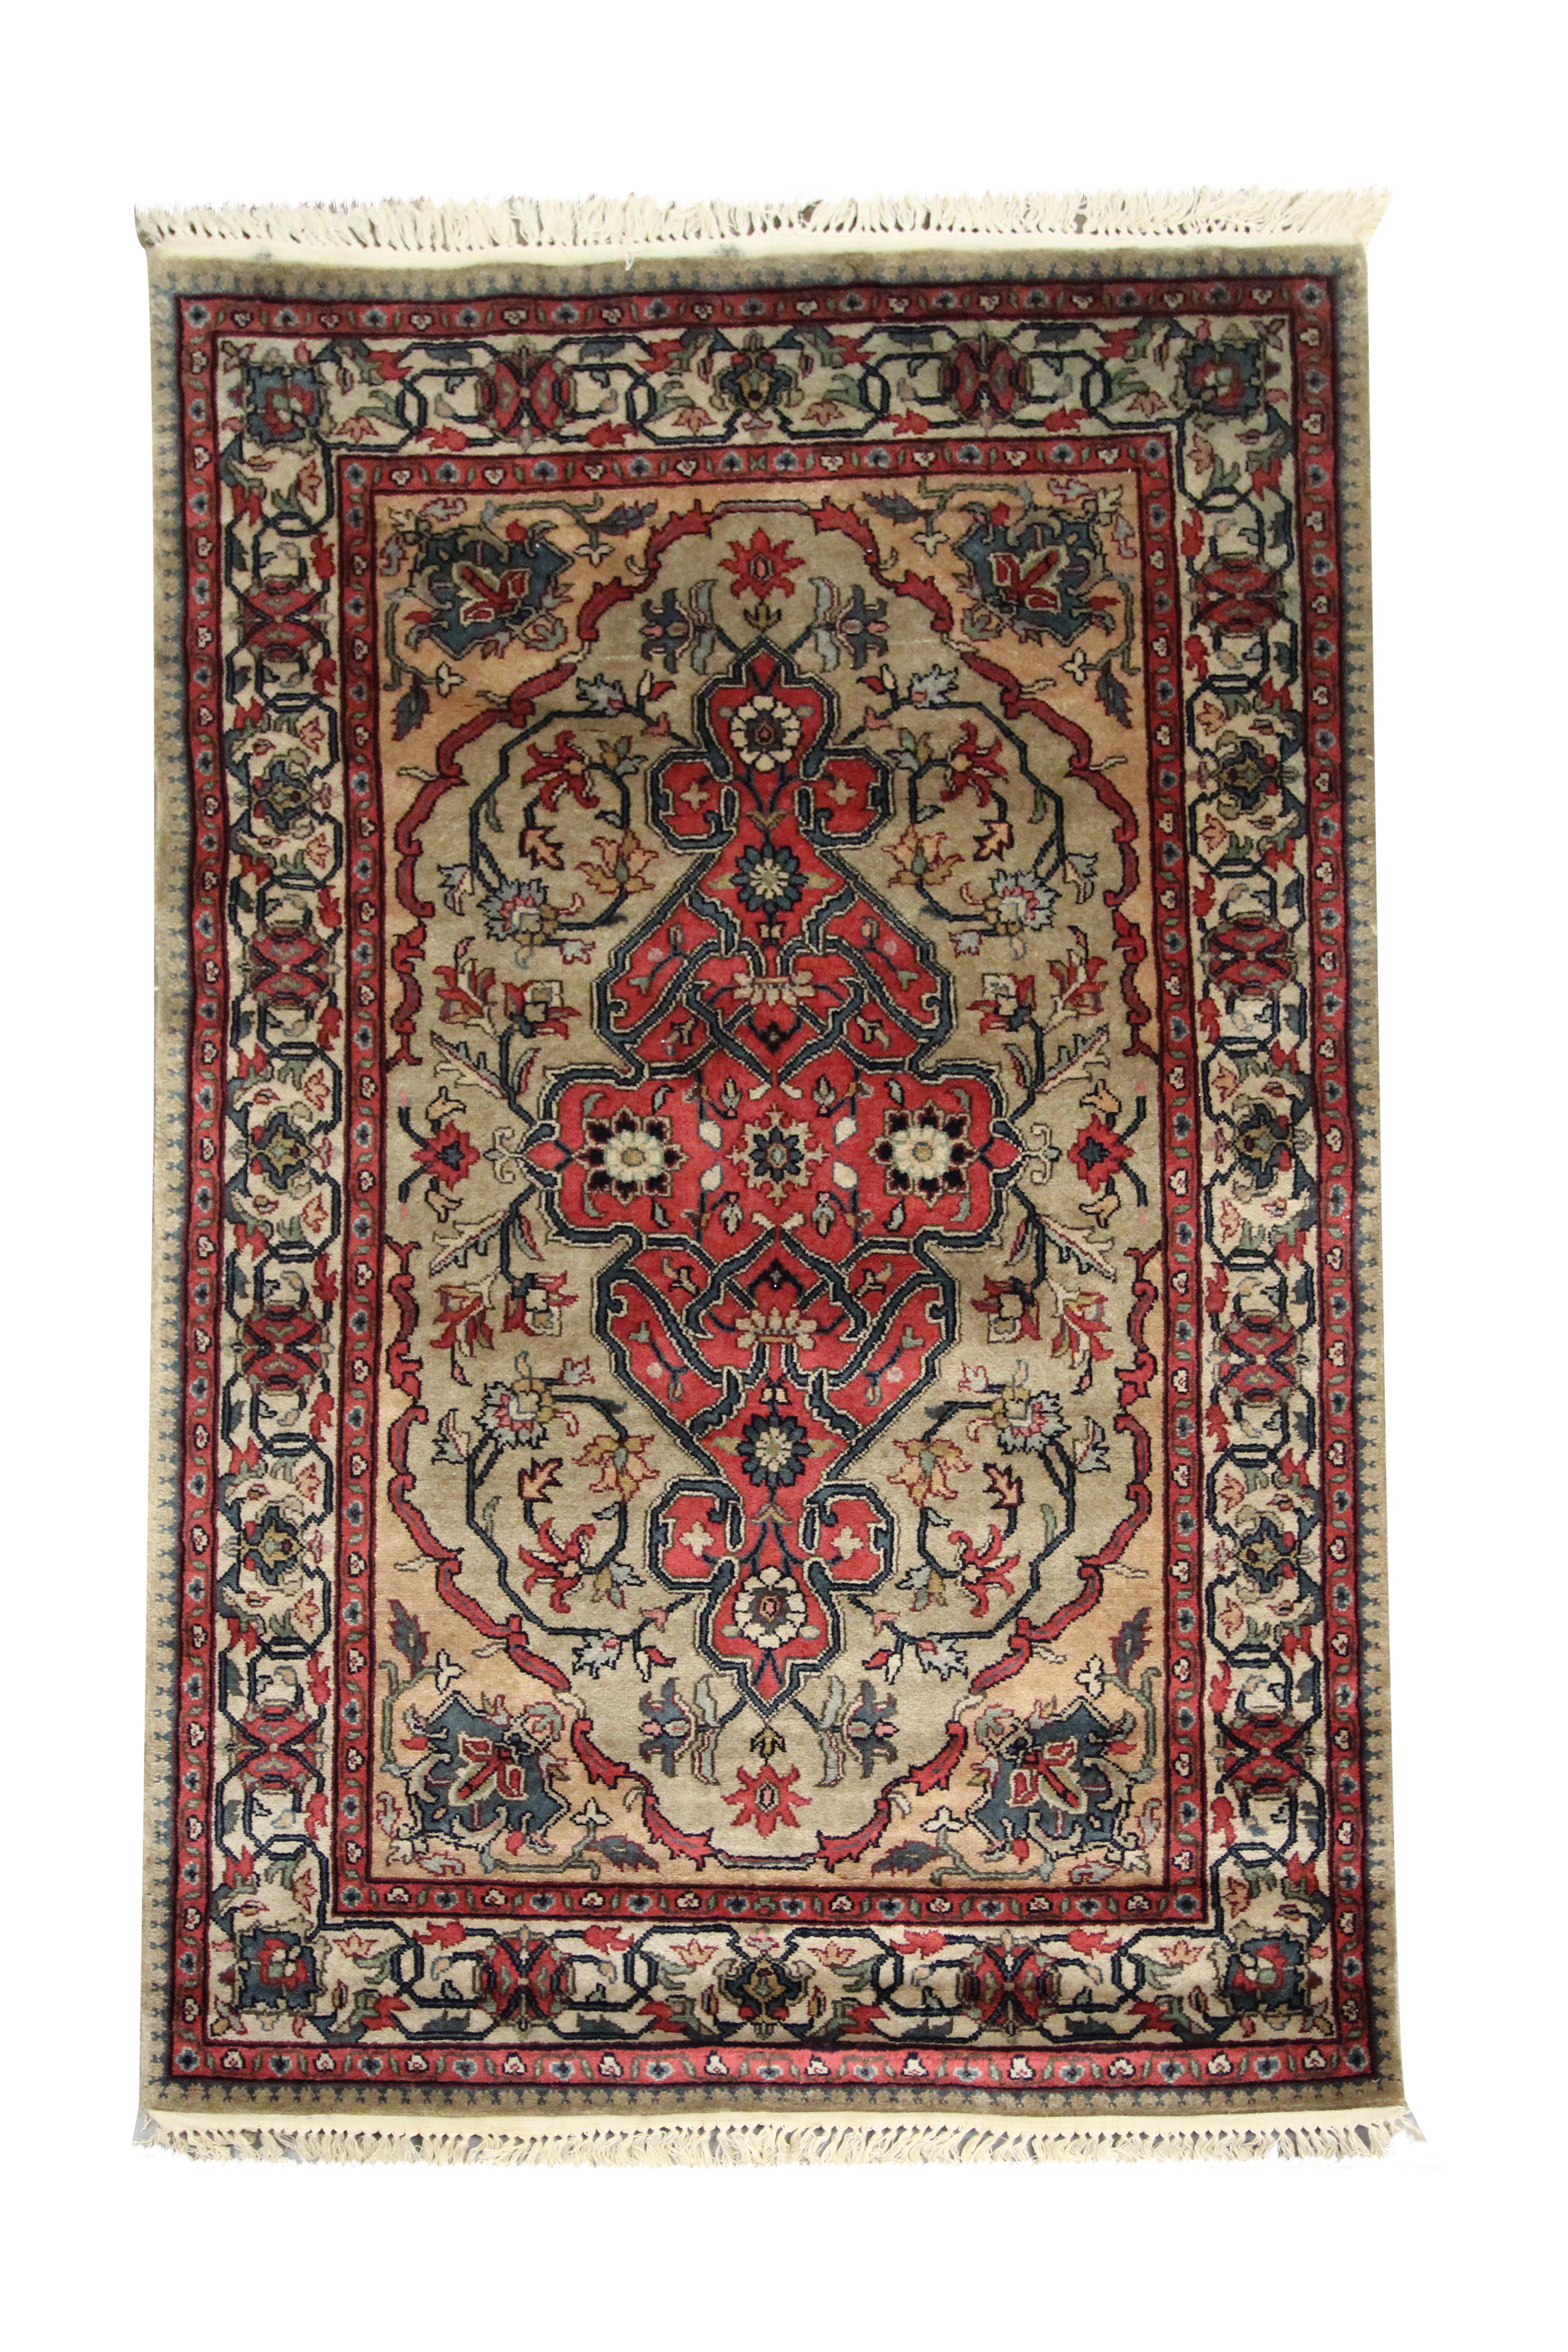 Ce tapis en laine audacieux est un tapis indien tissé au début des années 2000. Le dessin a été tissé de manière complexe et présente un motif symétrique détaillé tissé dans des accents de vert, rouge, beige et bleu. Décoré de motifs complexes de